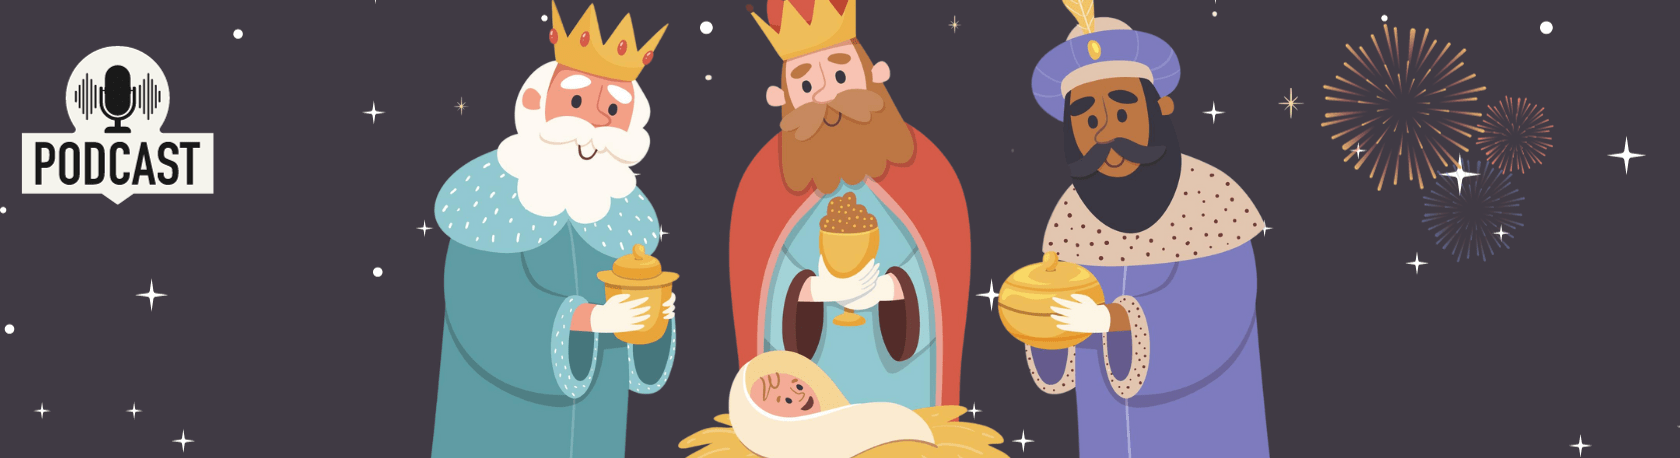 Work on your Spanish Listening Comprehension: La celebración del Día de Reyes - Three Wise Men Celebration - Spanish Podcast - Spanish Practice - Speak Spanish - Learn Spanish - Easy Español